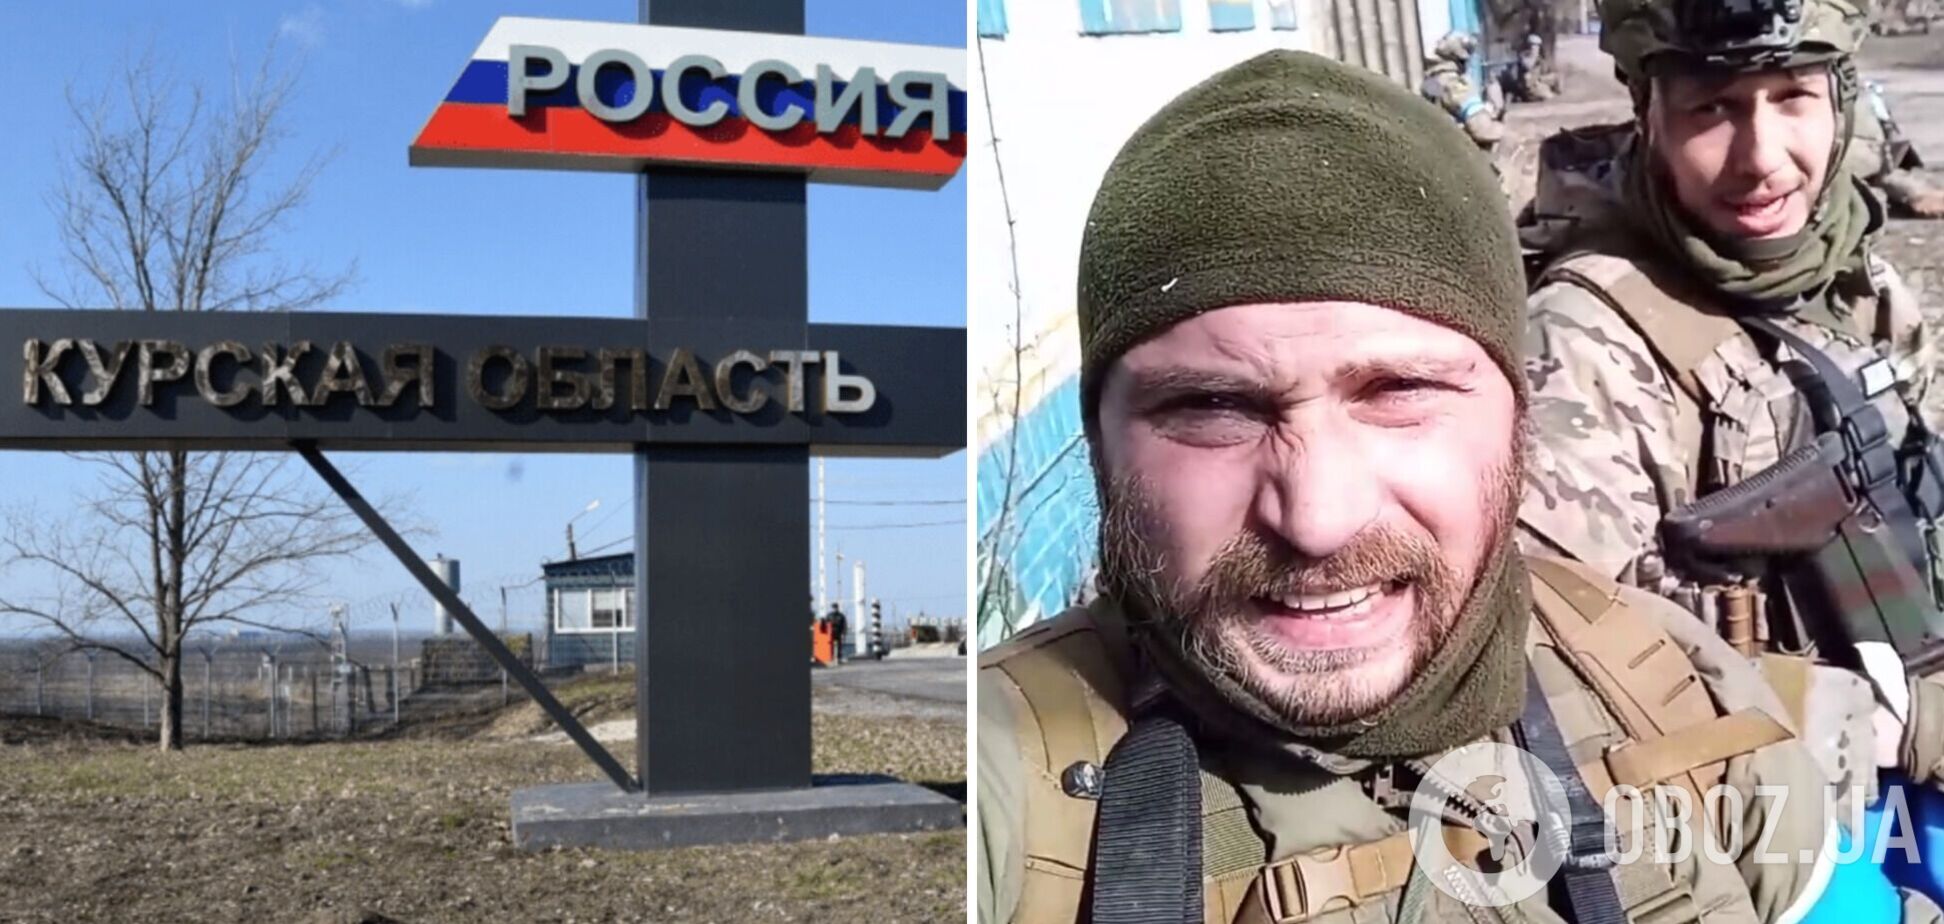 'Продвигаемся дальше, улицы простреливаются': в легионе 'Свобода России' показали кадры из Теткино. Видео